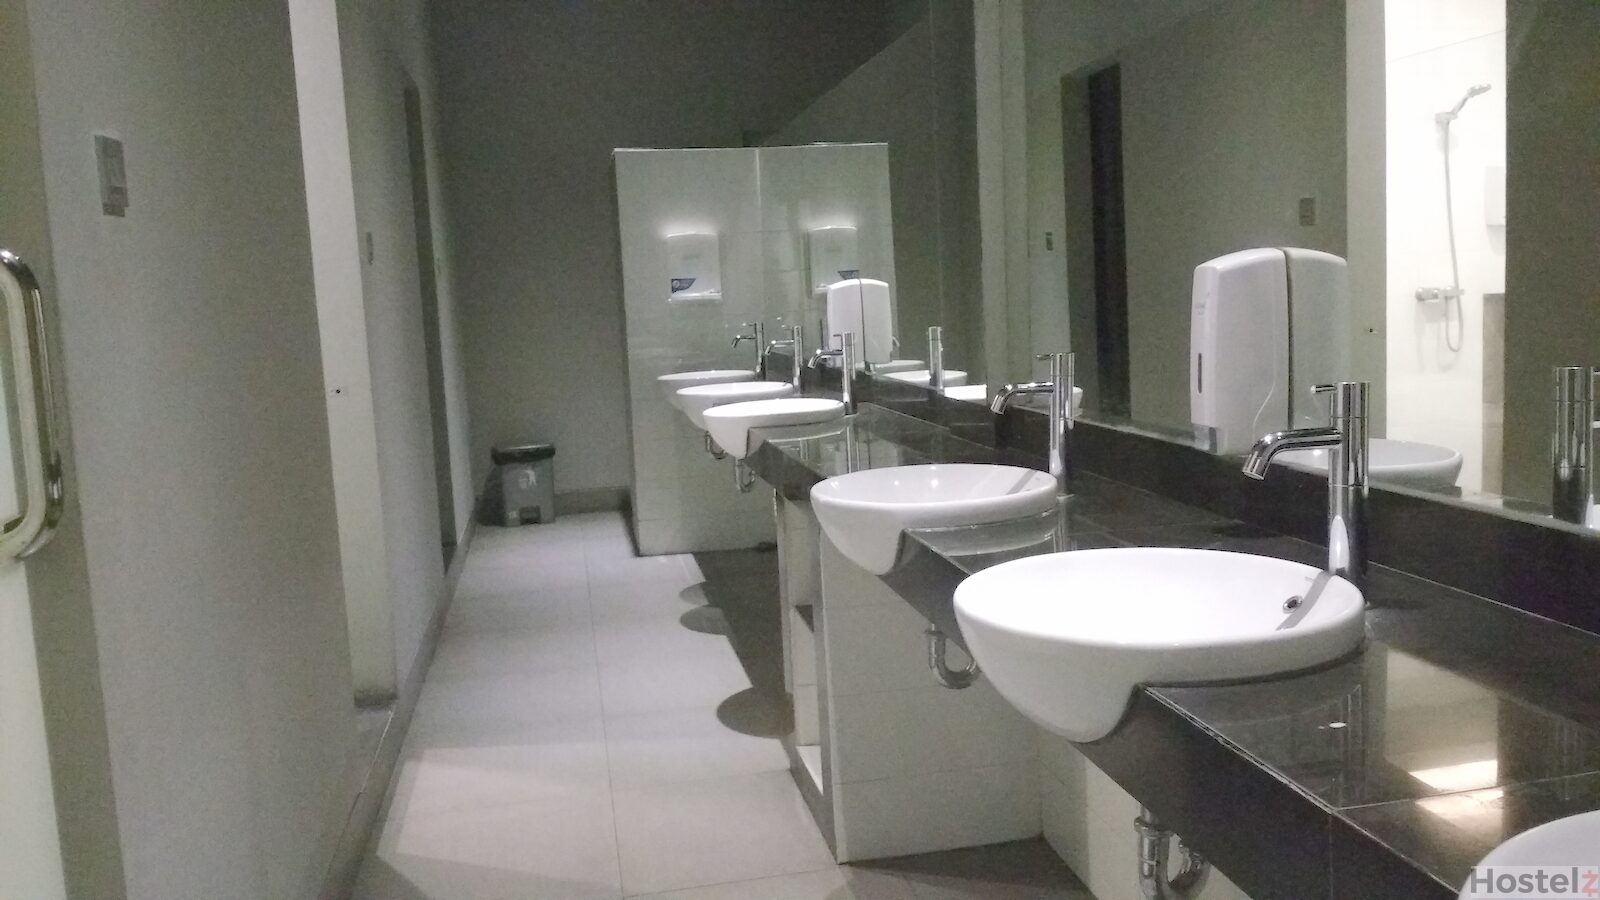 the big bathroom